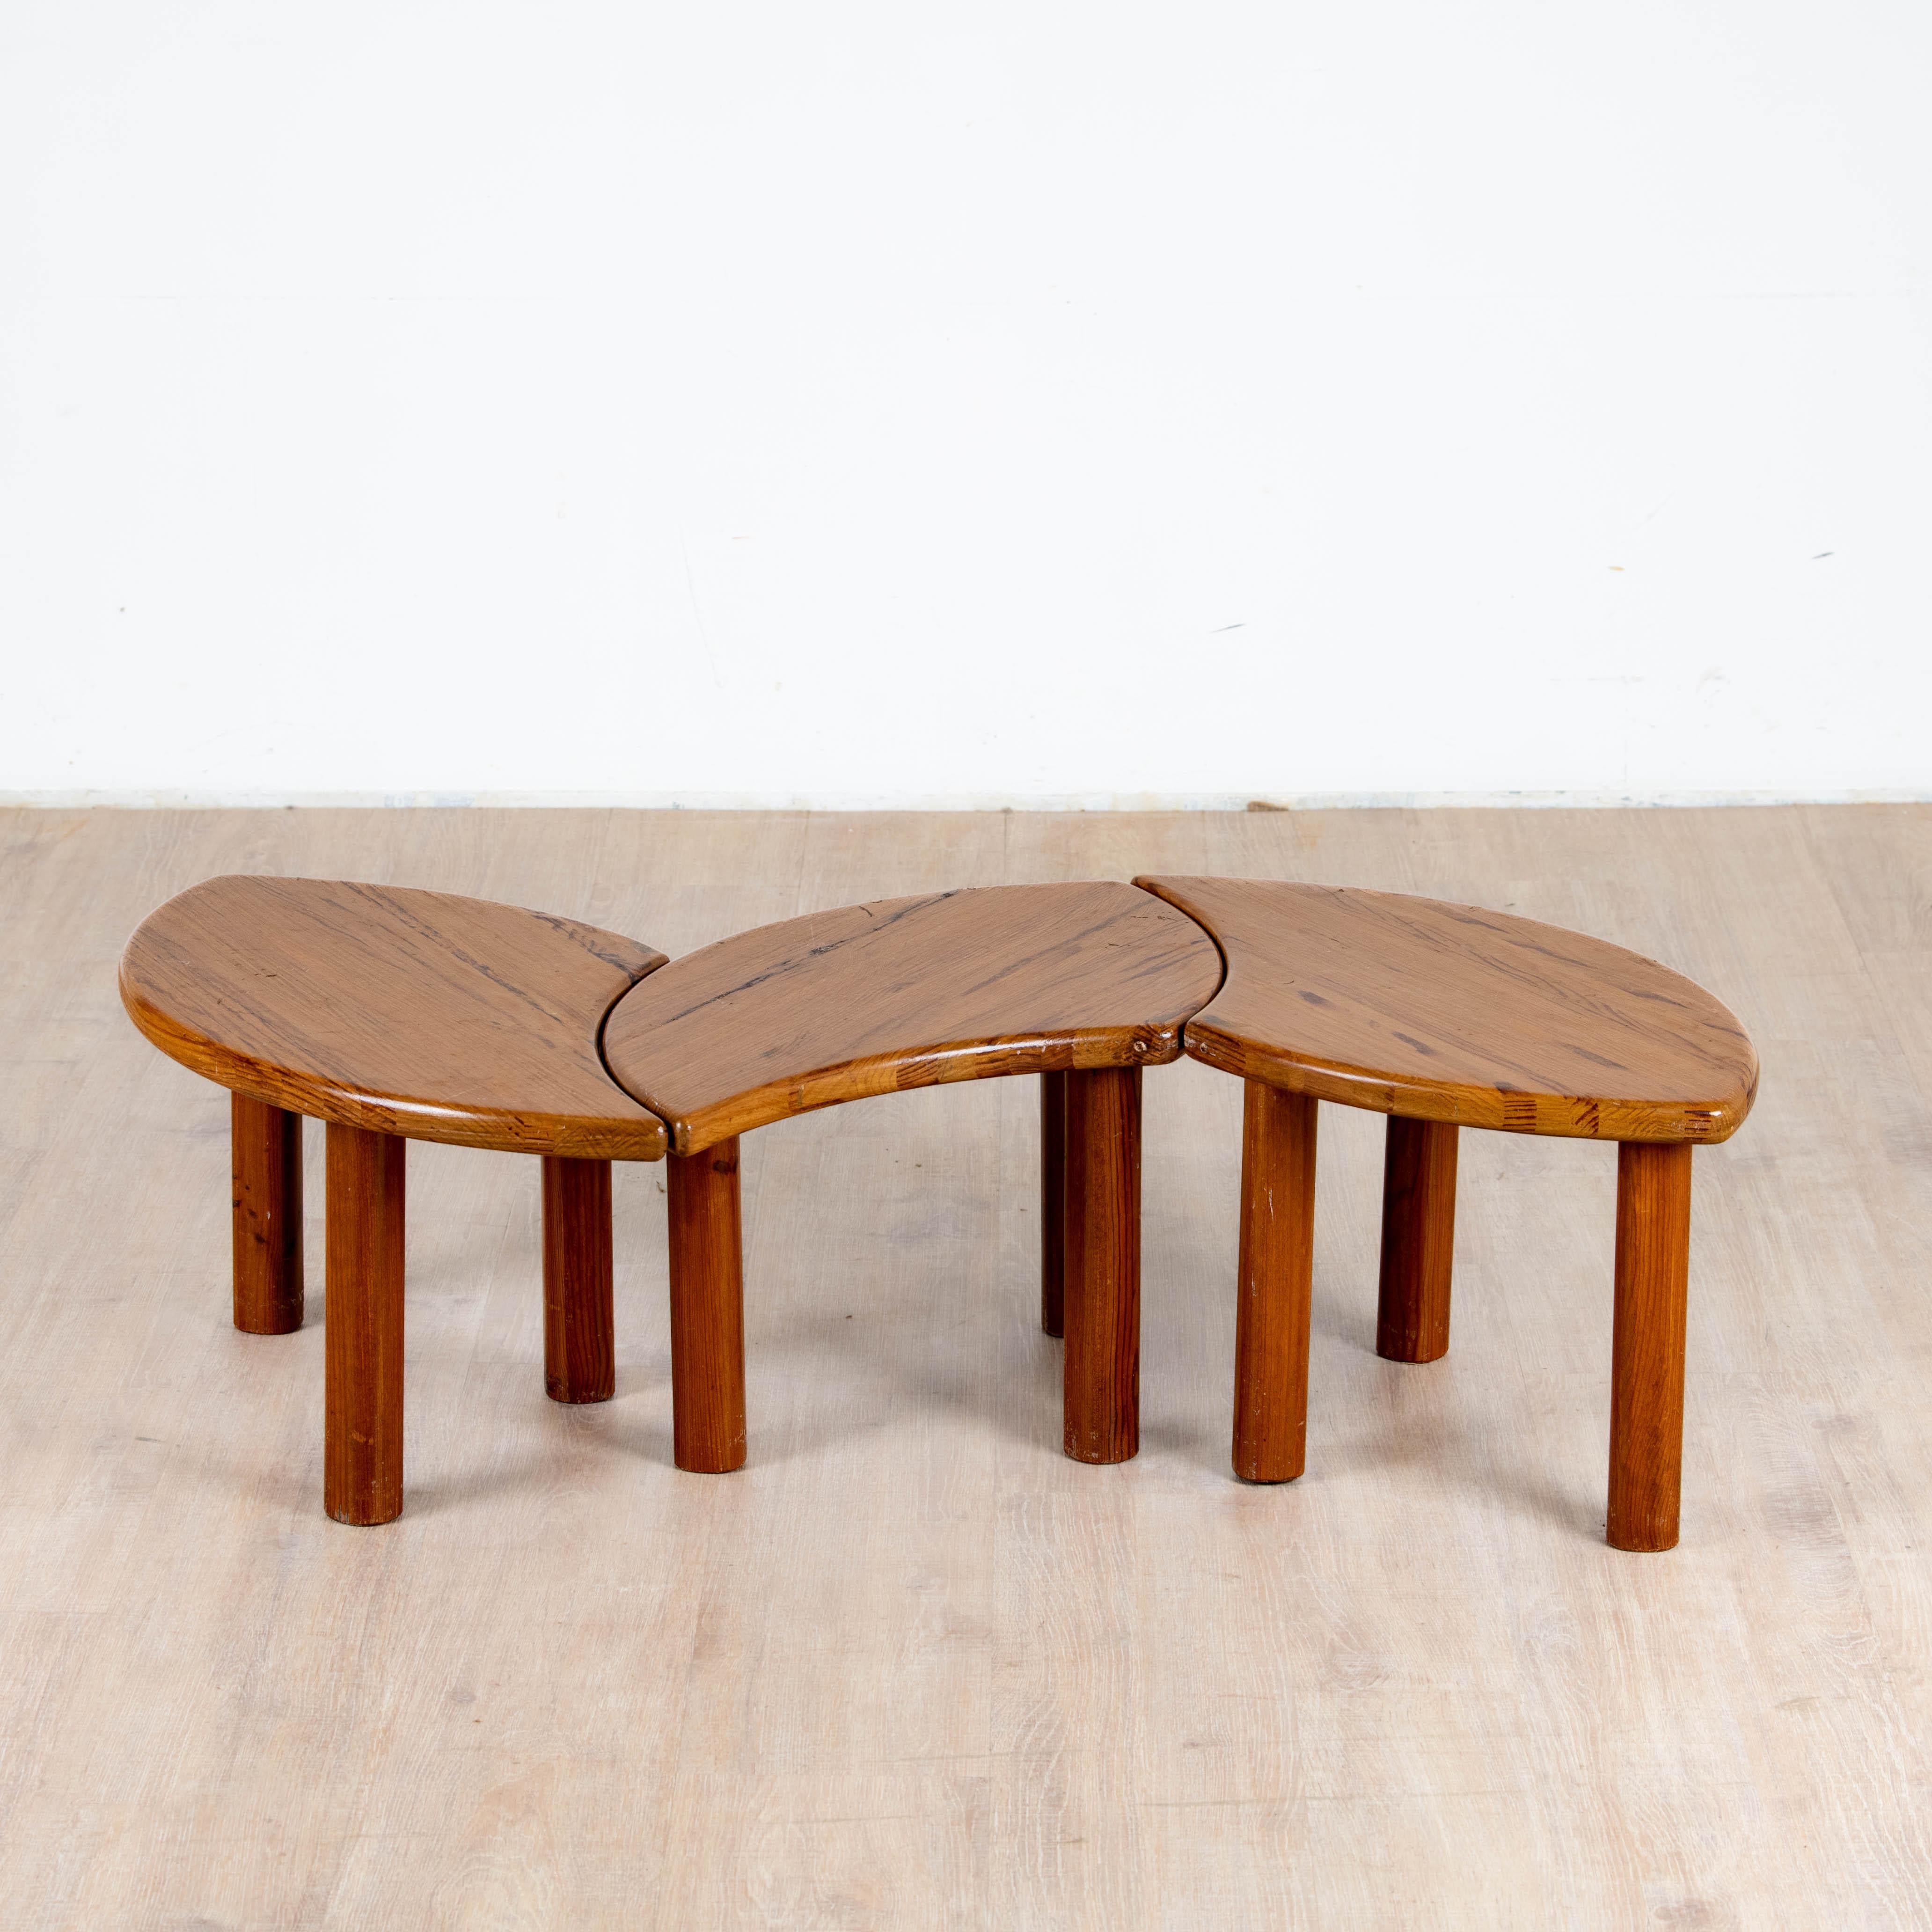 Ensemble de 3 tables basse tripodes modulable en pin travail artisanal des années 1980. Le plateau elliptique, le piètement tripode permettent de créer plusieurs combinaison pour répondre à vos besoins, le pin et sa patine chaleureuse permet